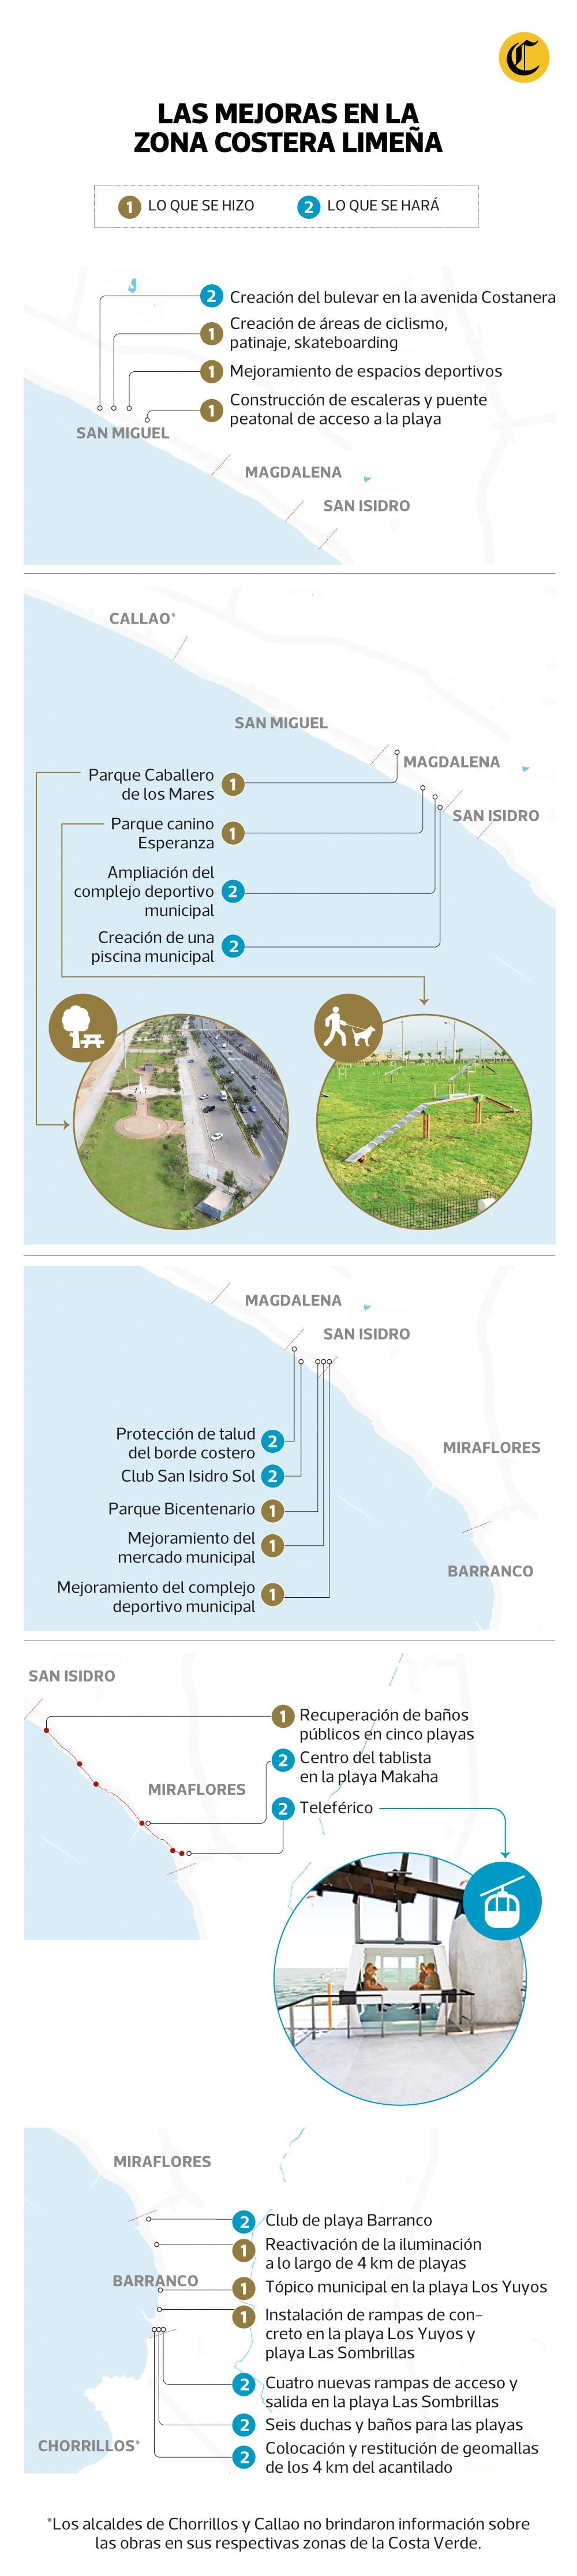 Una radiografía de las obras realizadas por las municipalidades en la Costa Verde hasta la fecha, y sus proyectos para los siguientes meses.